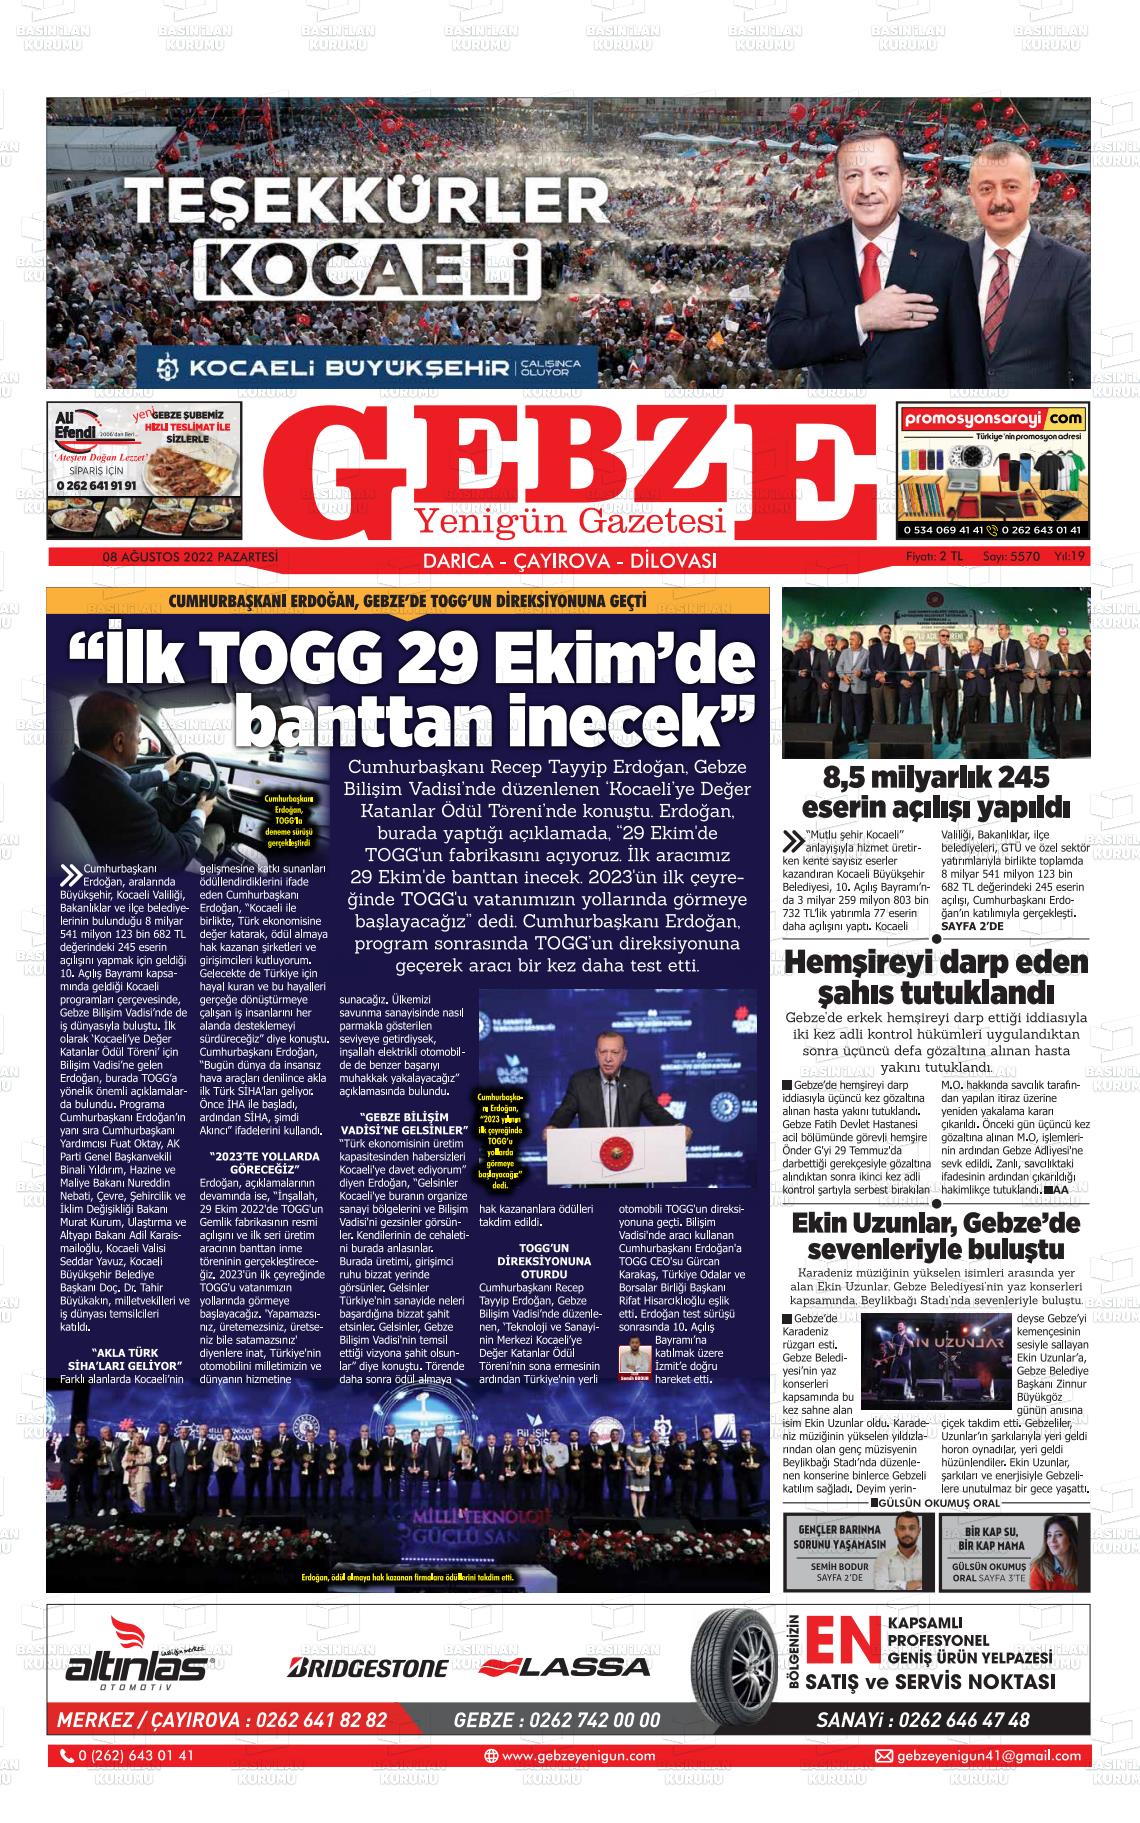 08 Ağustos 2022 Gebze Yenigün Gazete Manşeti